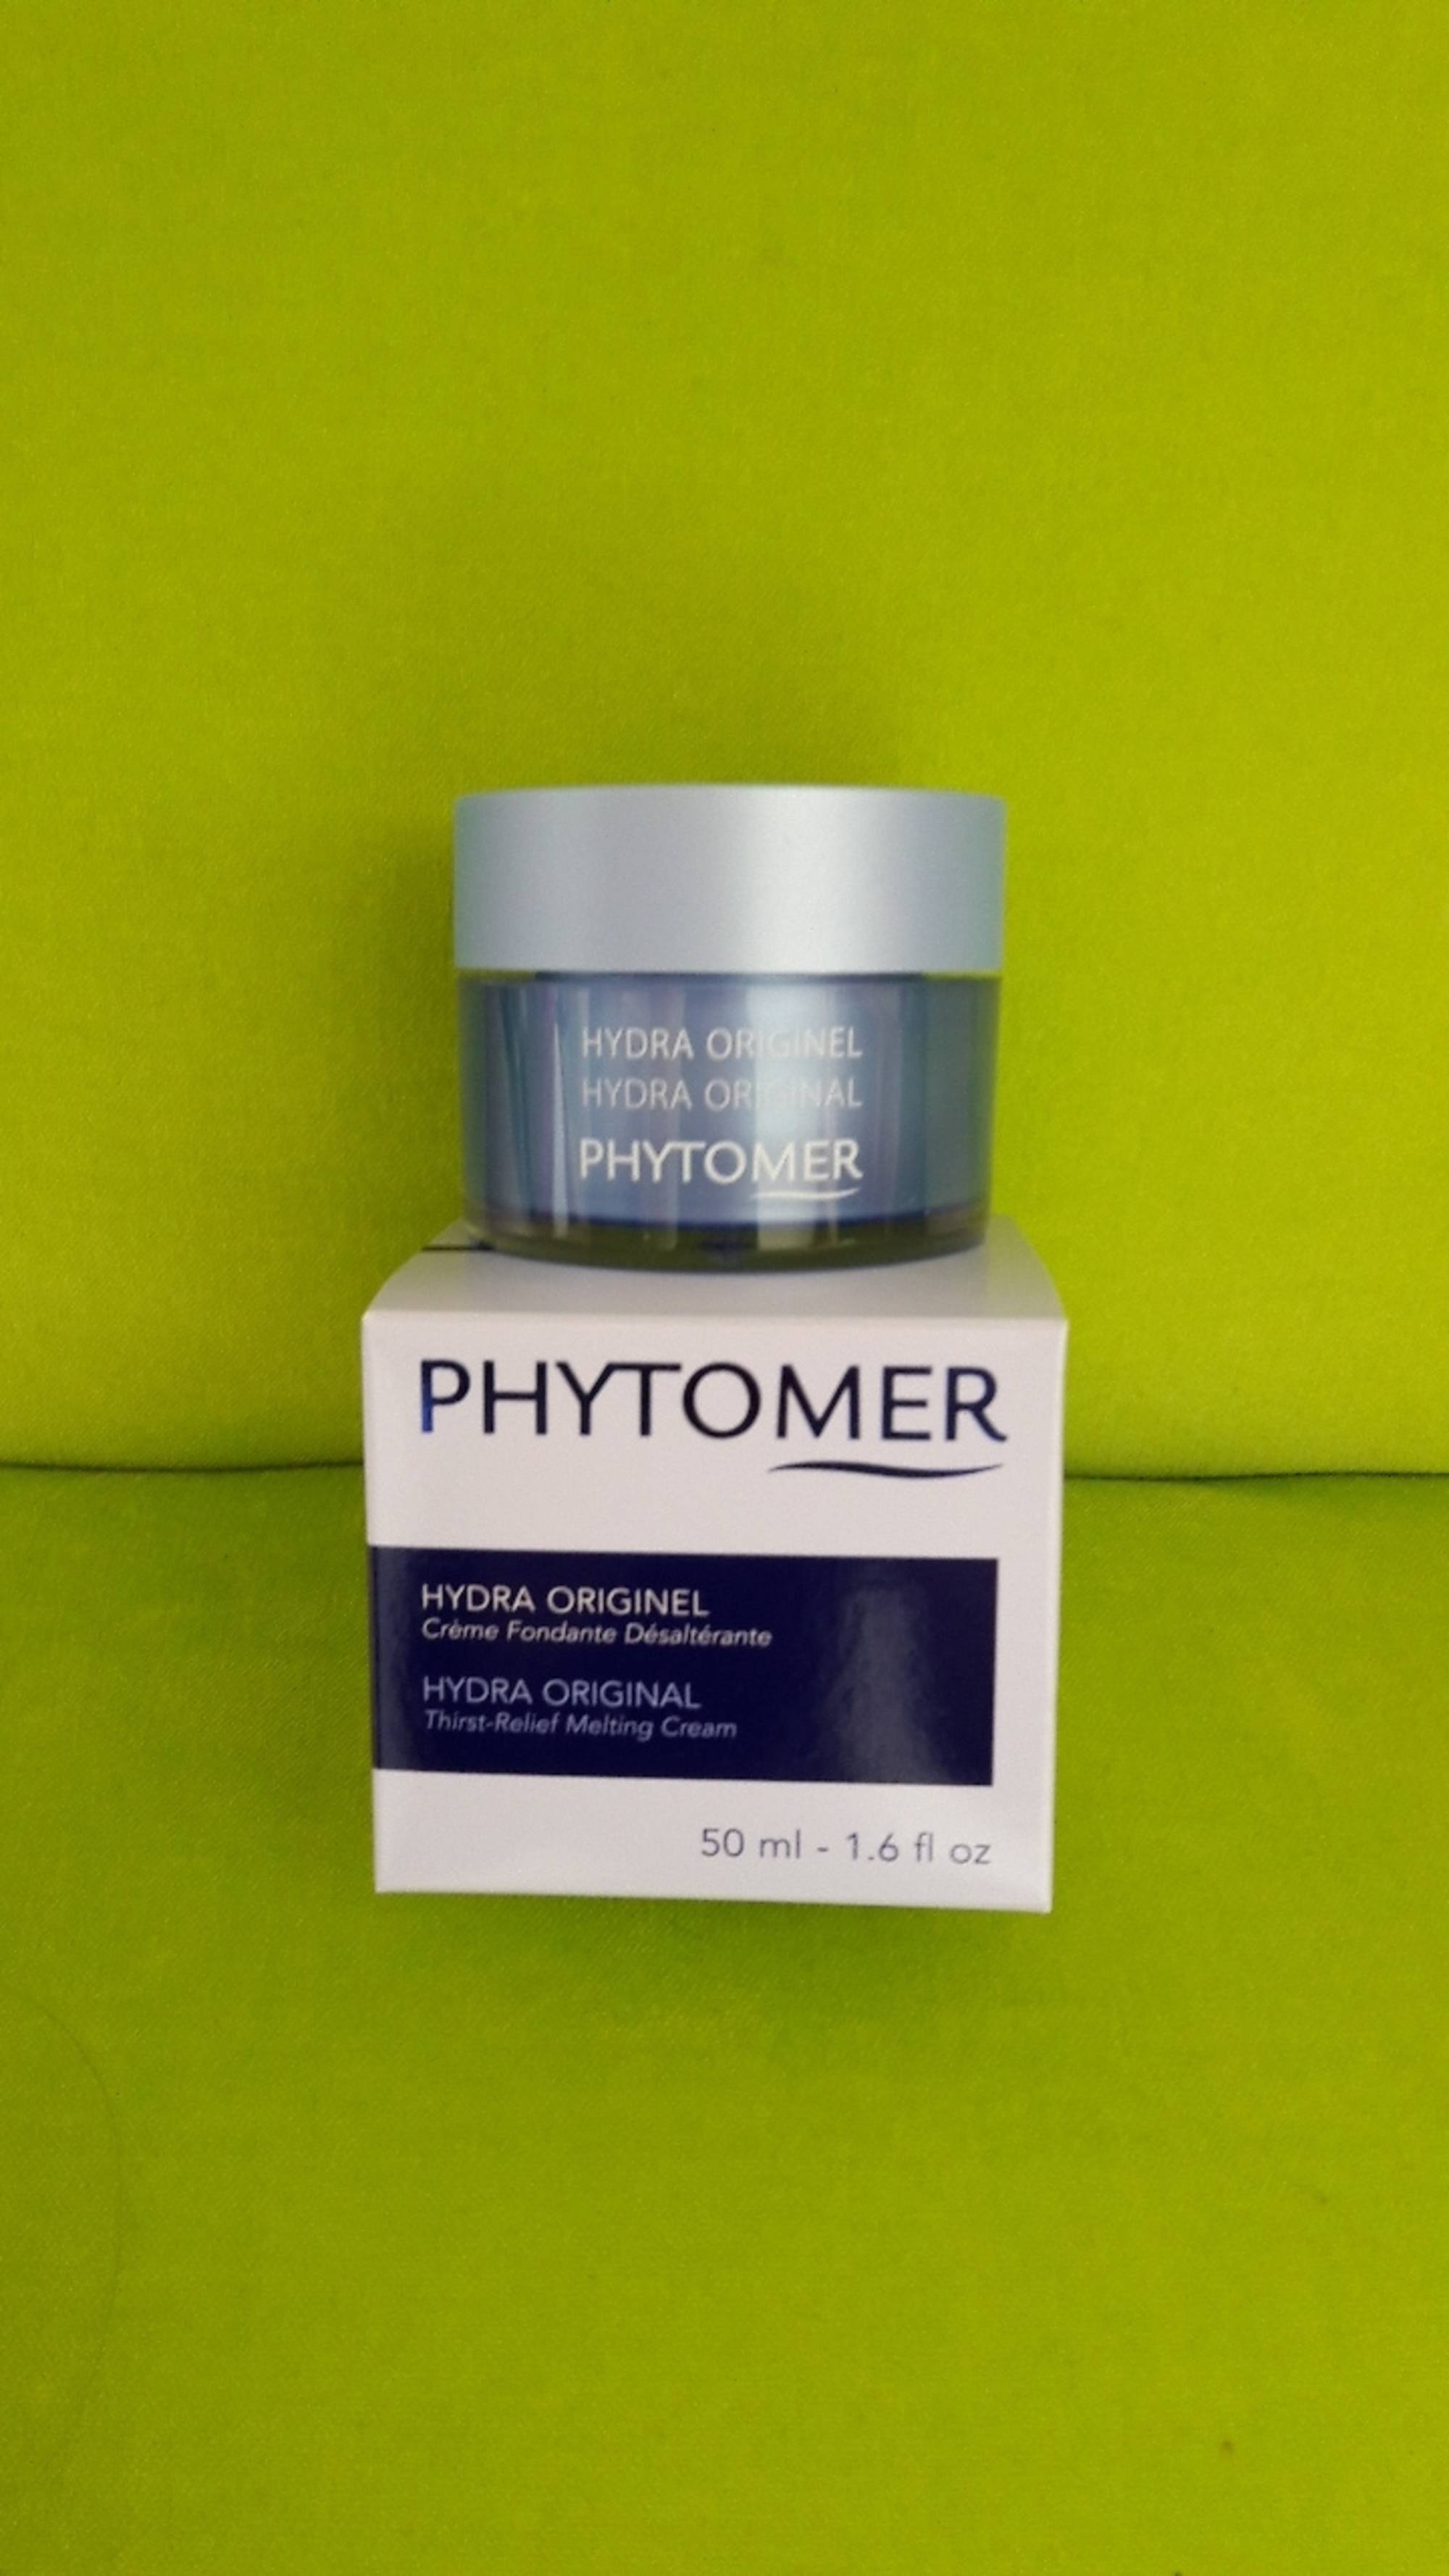 PHYTOMER - Hydra originel - Crème fondante désaltérante